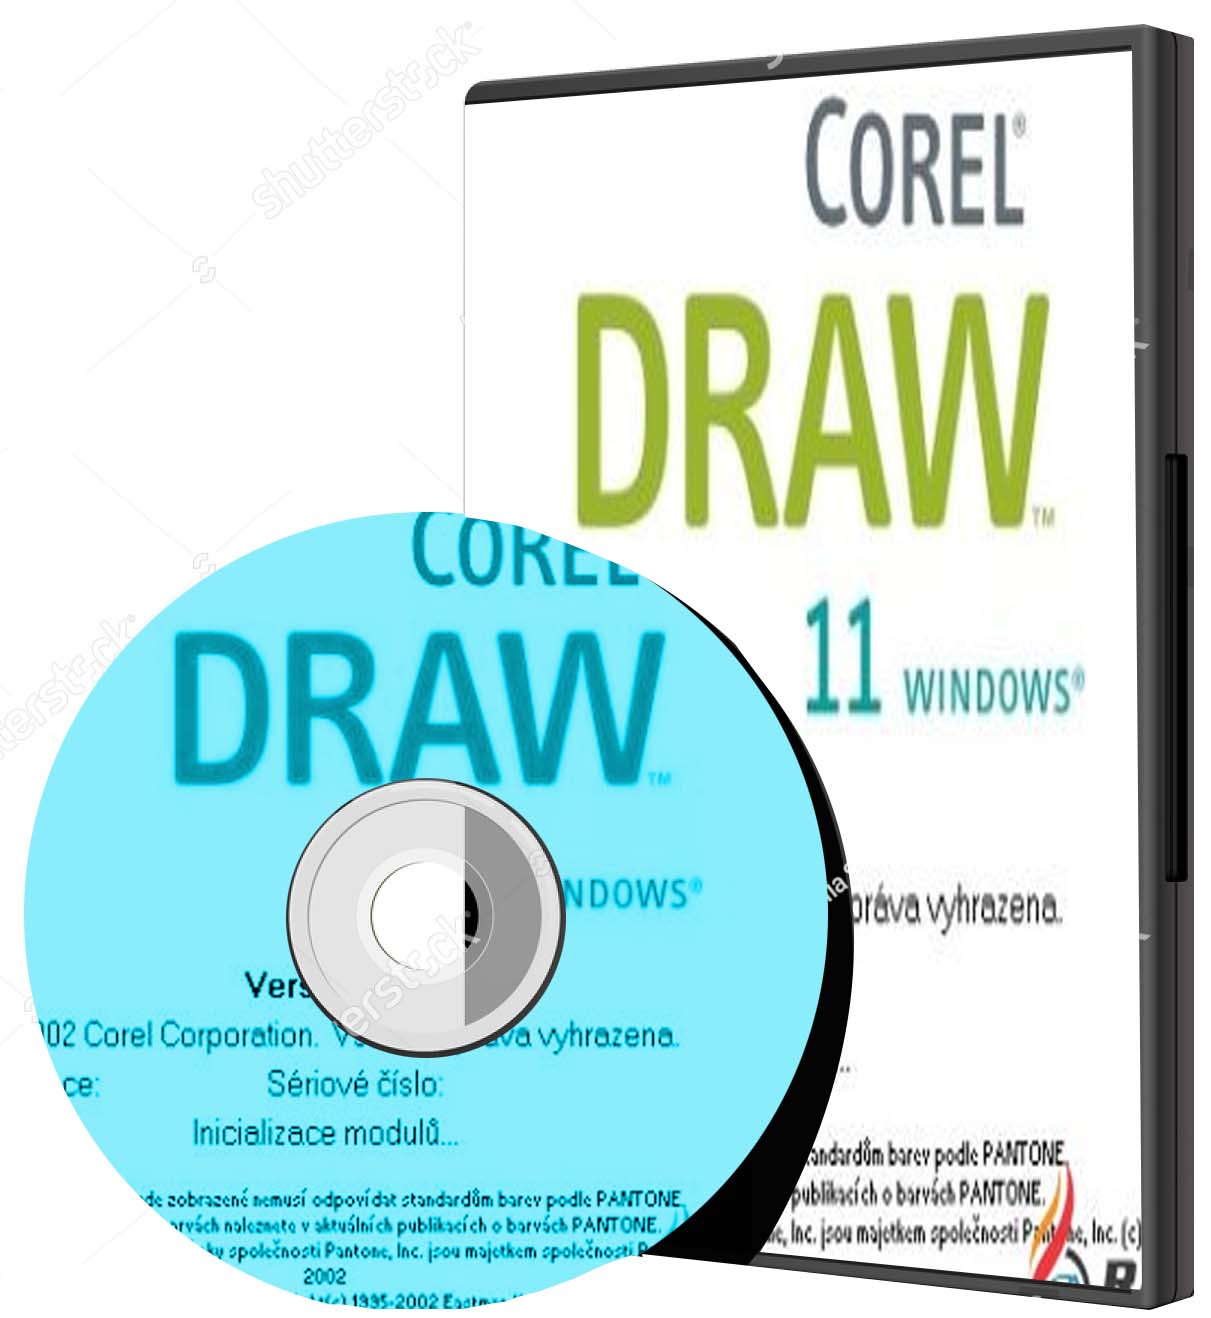 make a sinature in corel draw 11